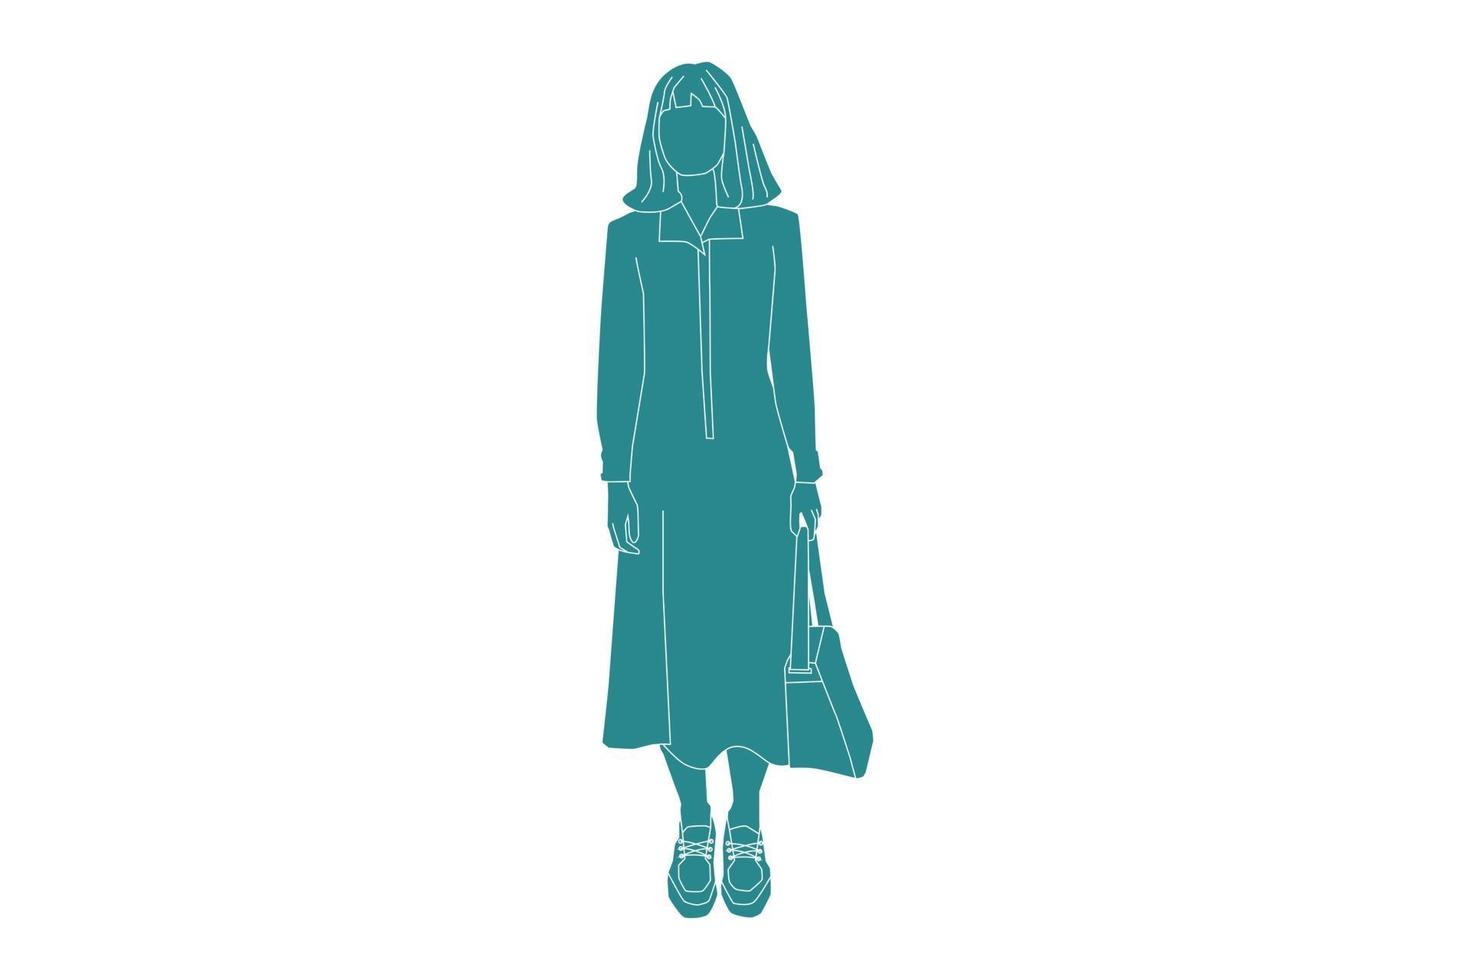 vectorillustratie van casual vrouw staande, vlakke stijl met outline vector